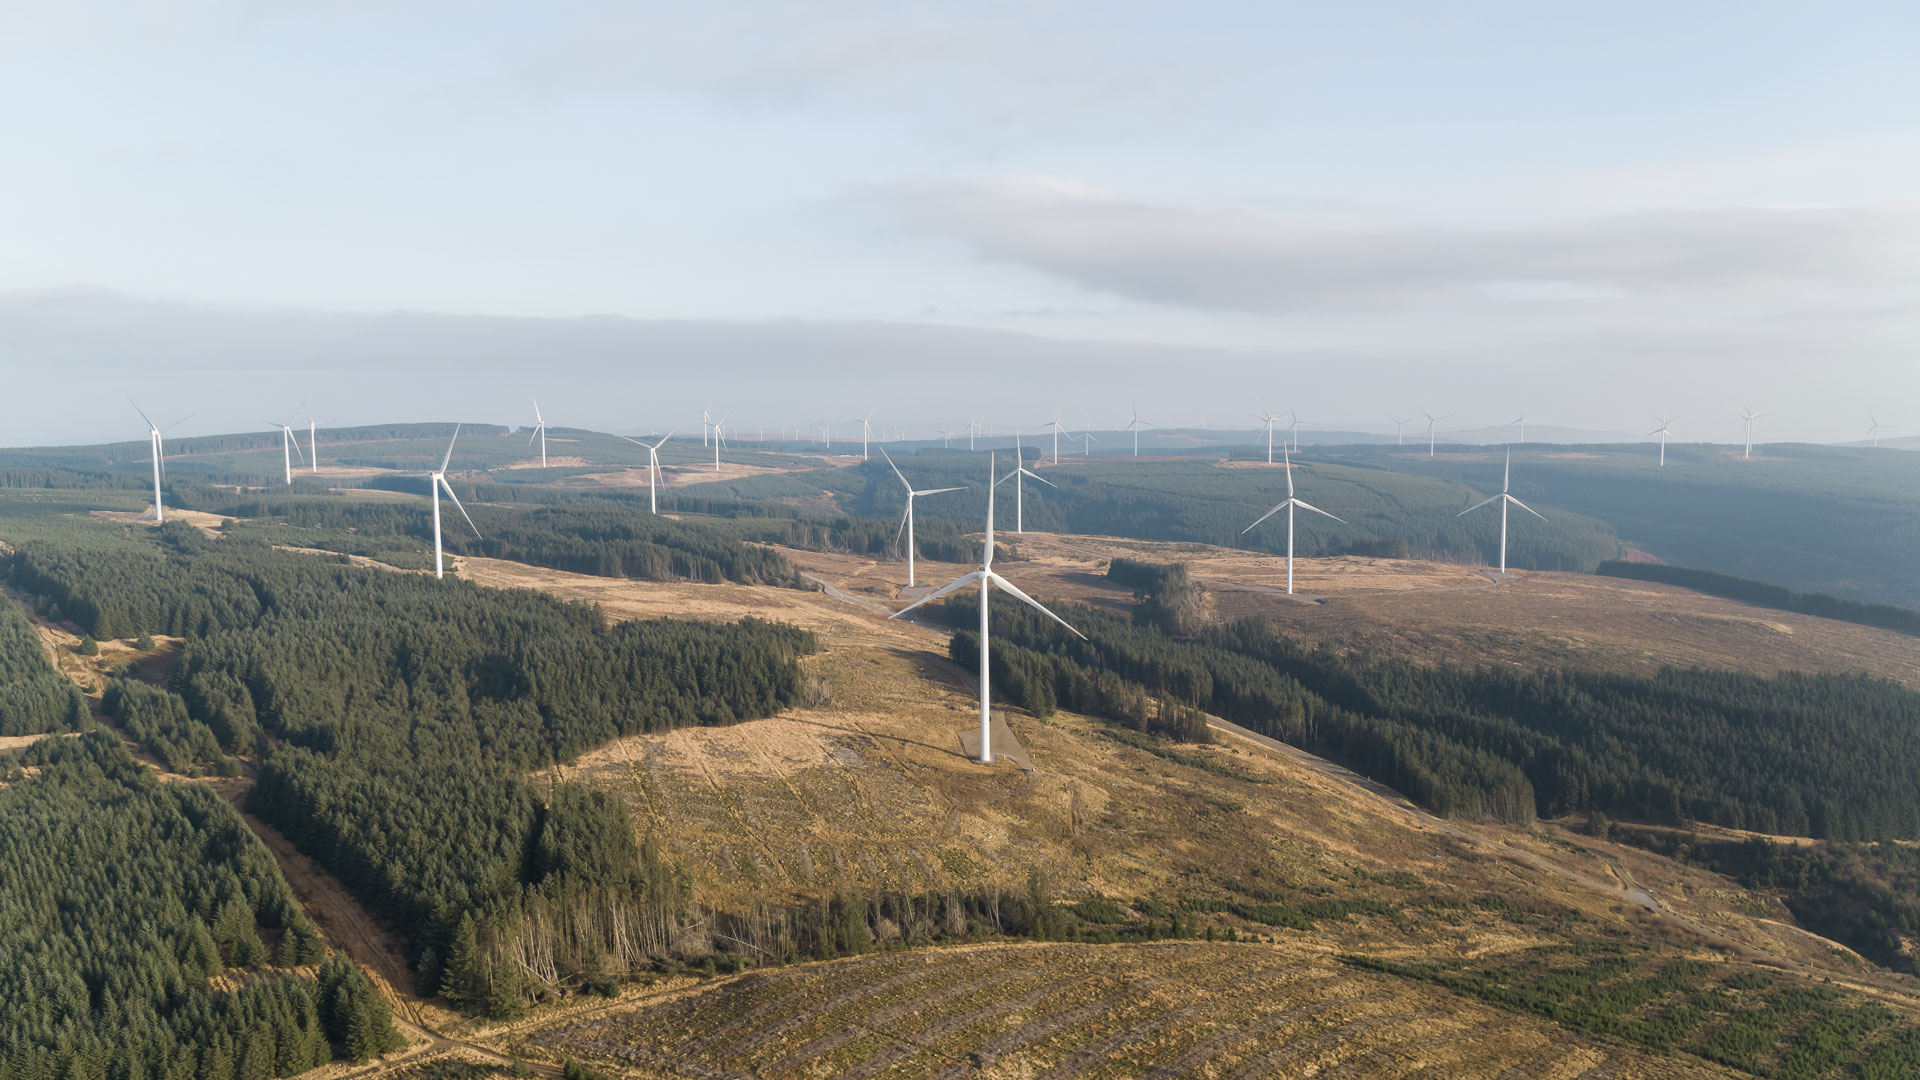 Drone photo of the land-based wind farm Pen y Cymoedd in UK